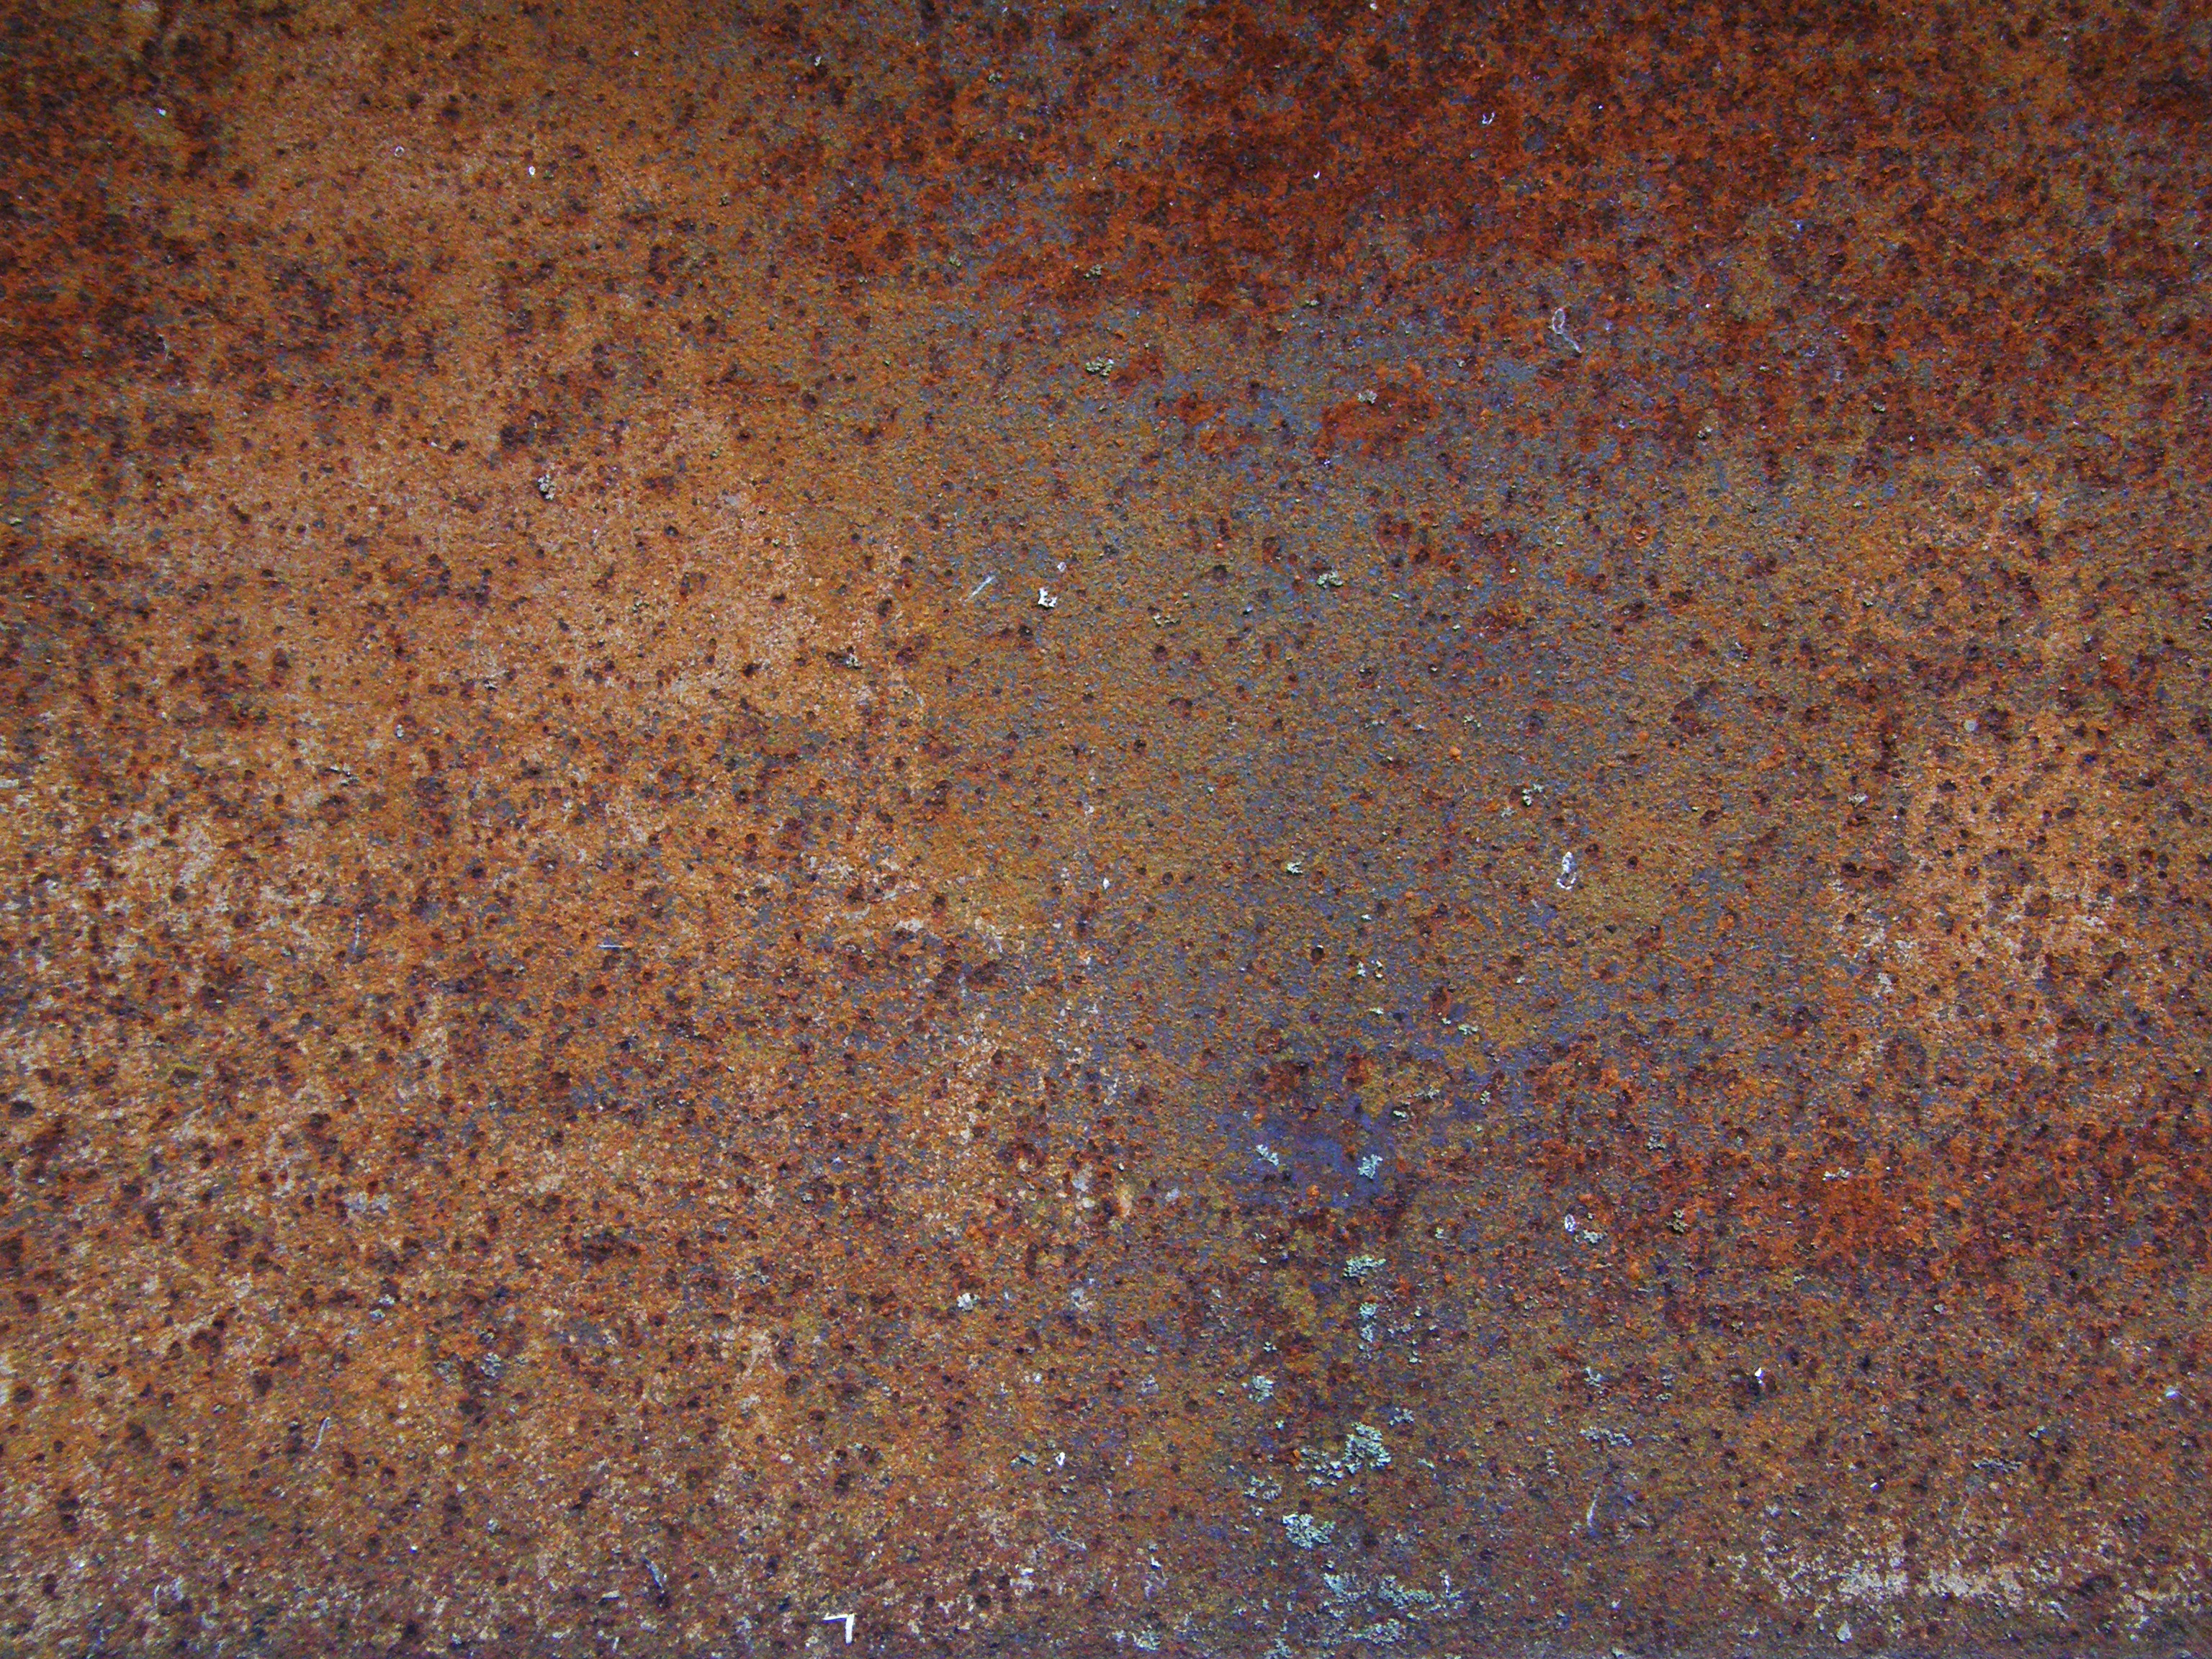 Elements that rust фото 77